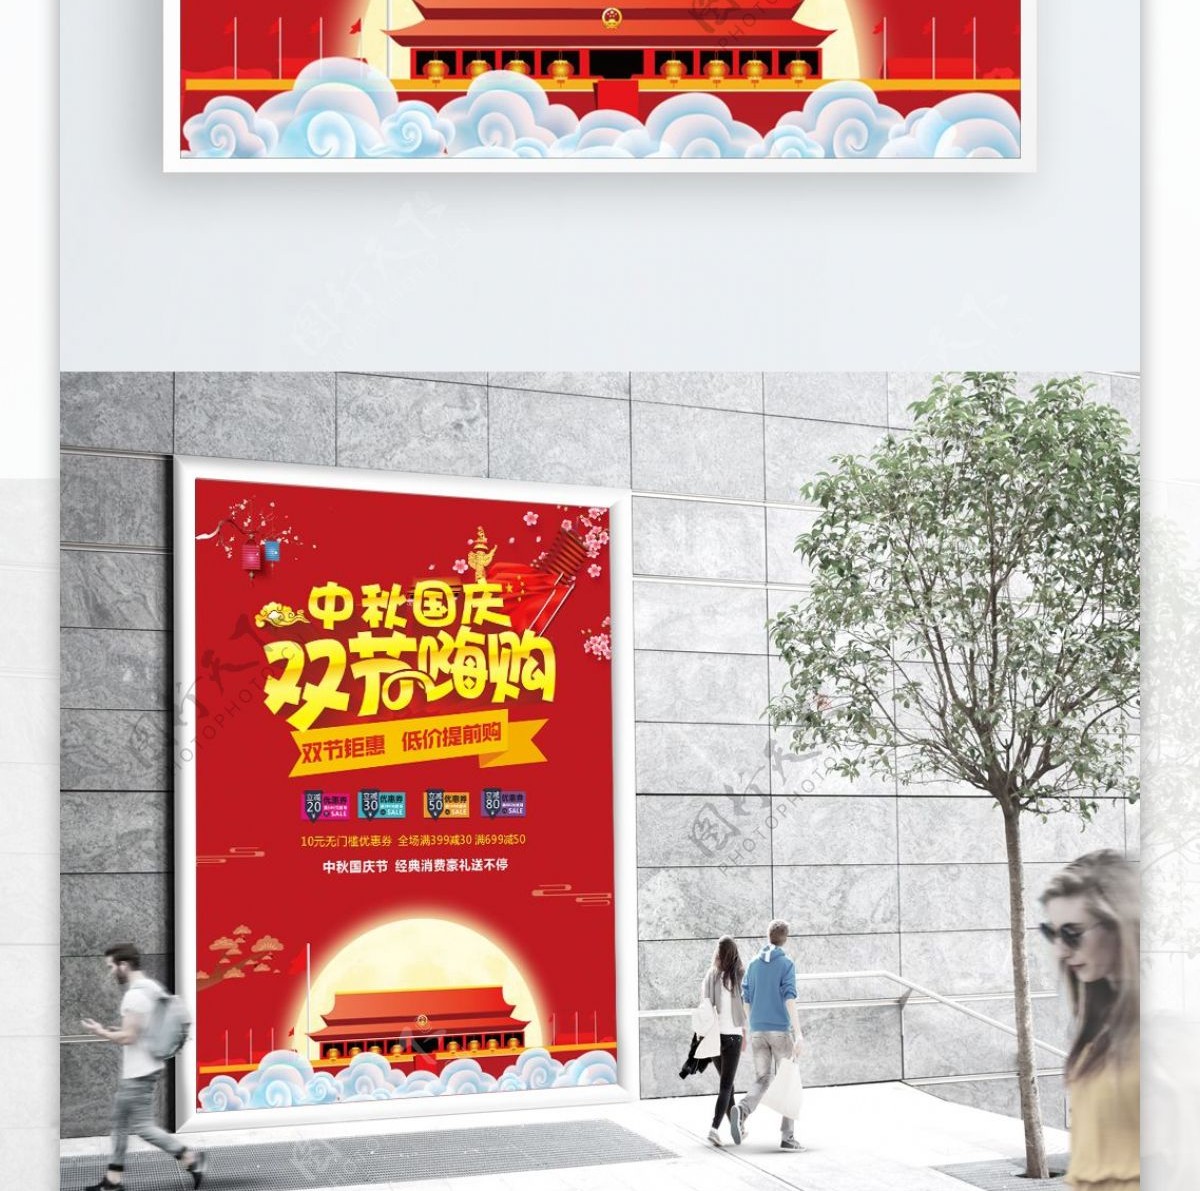 中秋国庆双节嗨购海报设计CDR模板